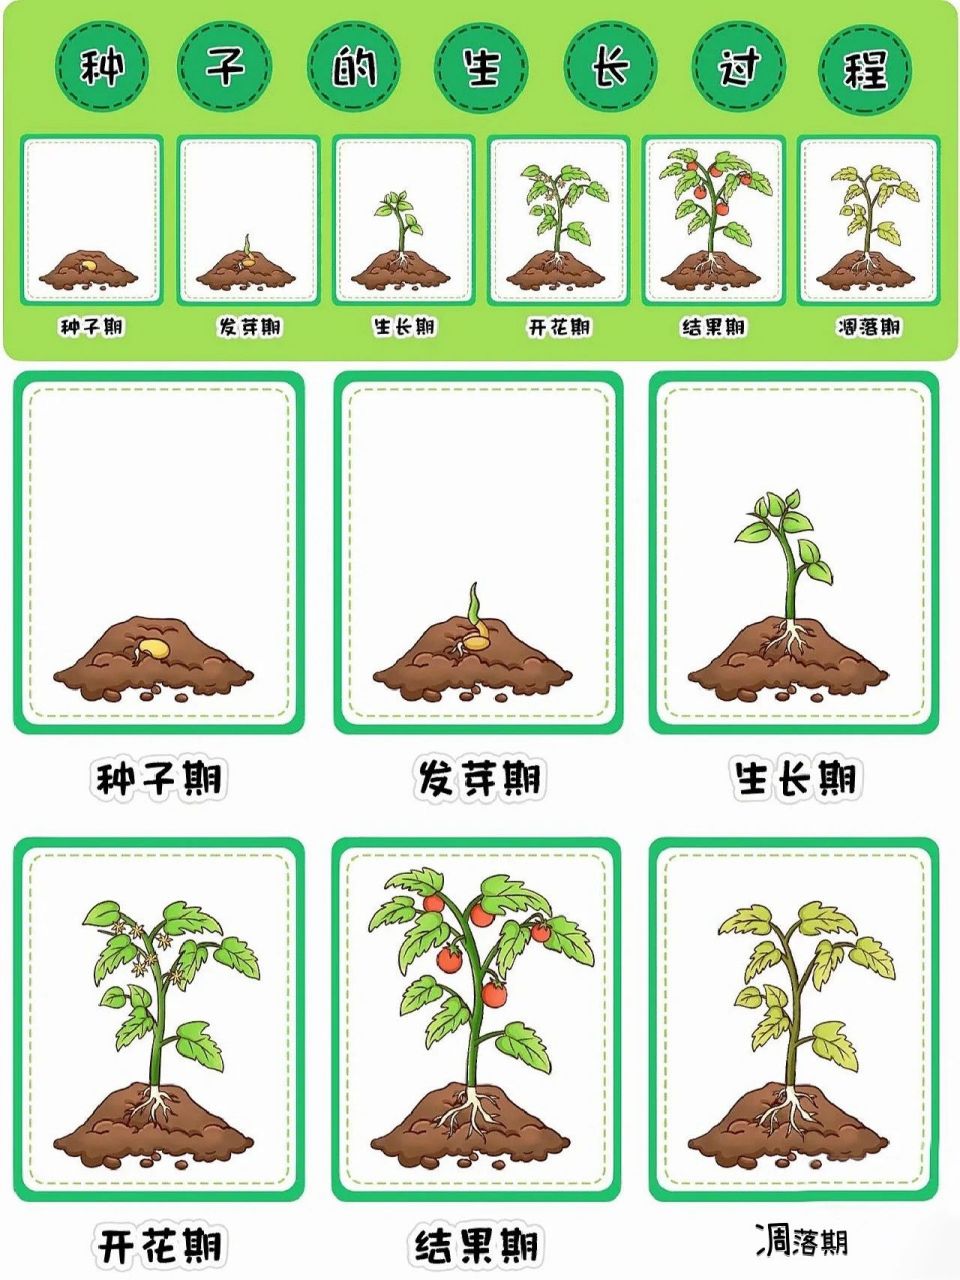 种子的生长过程 种子的生长过程